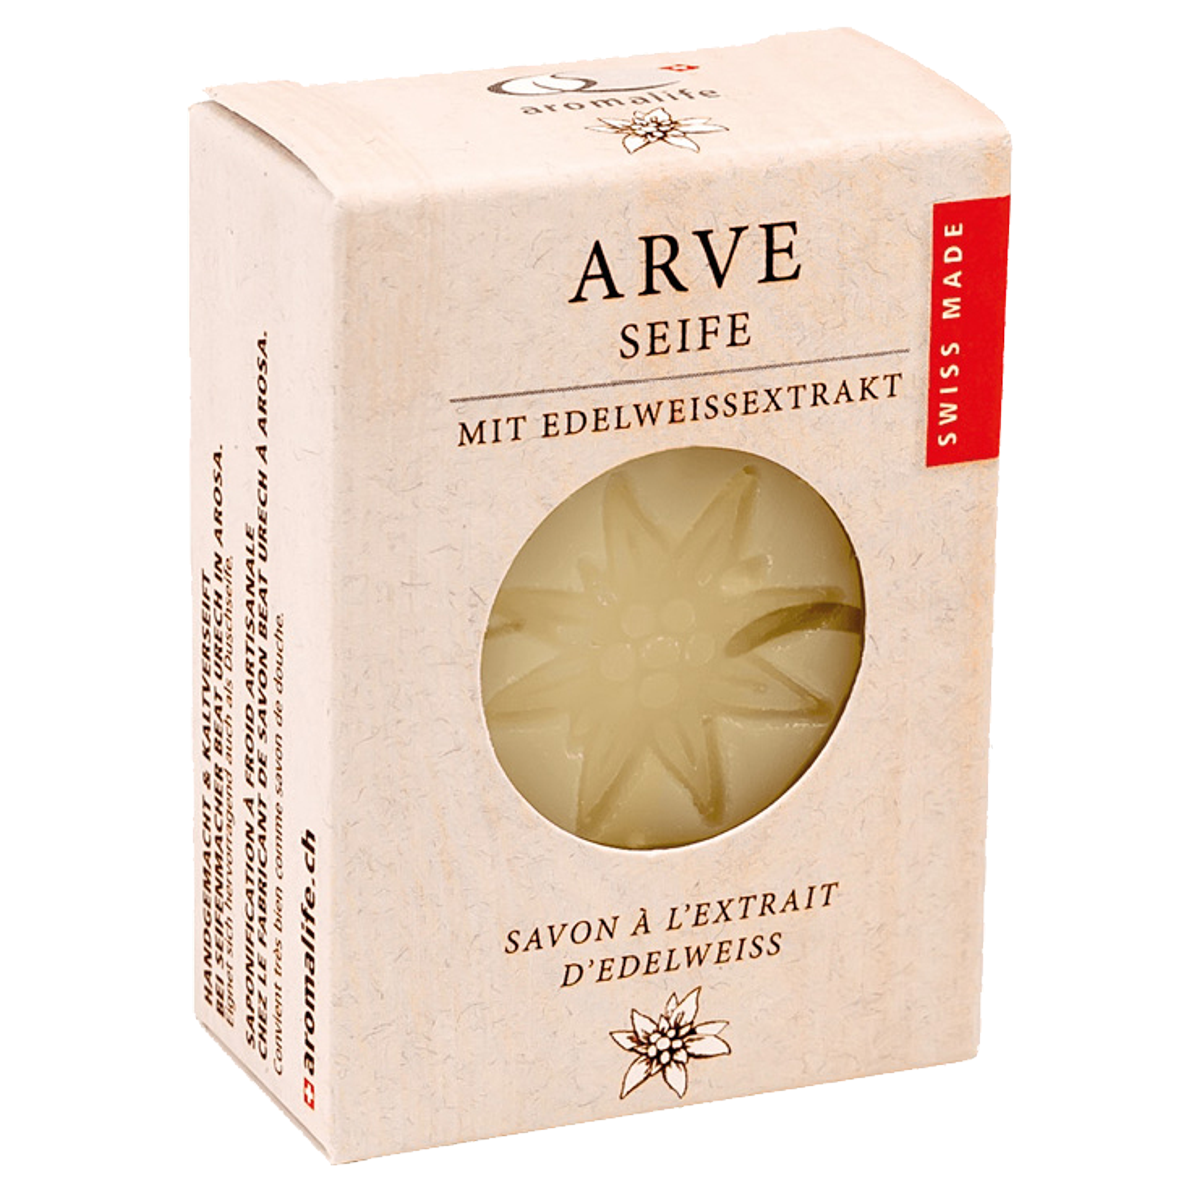 Aromalife Arve Seife mit Edelweissextrakt 90 g